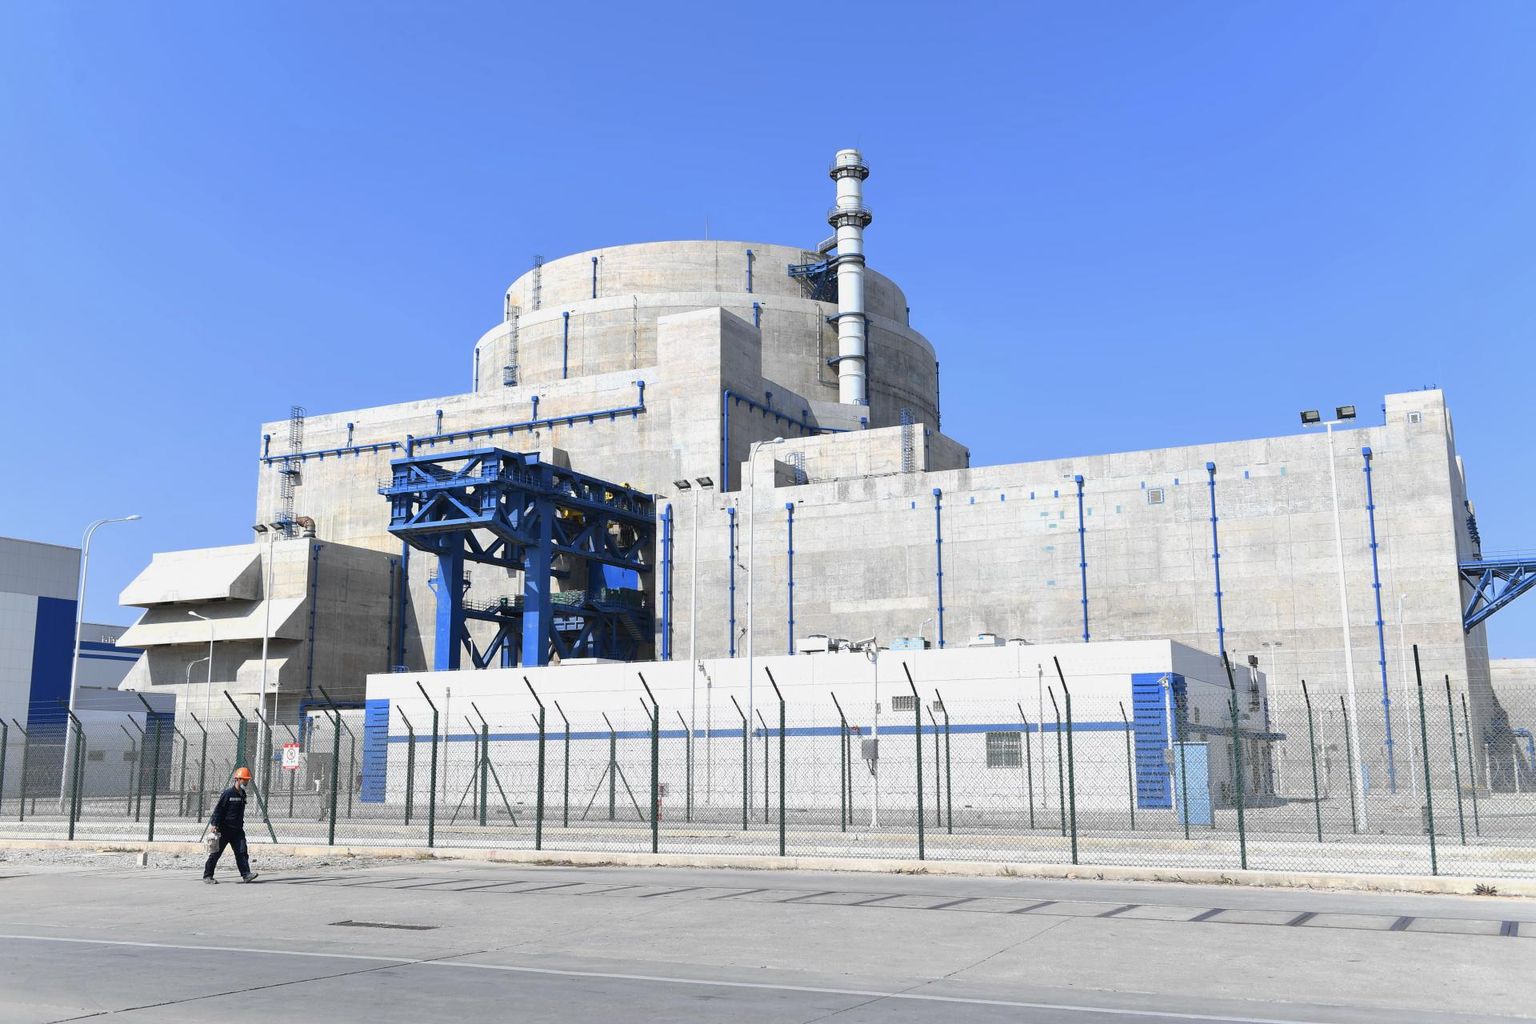 Hiinal on üle poolesaja traditsioonilise tuumaelektrijaama, nagu see Fuqingis asuv tuumajaam pildil, kuid riik katsetab praegu Wuweis oma esimest eksperimentaalset sulasoola tuumareaktorit. 